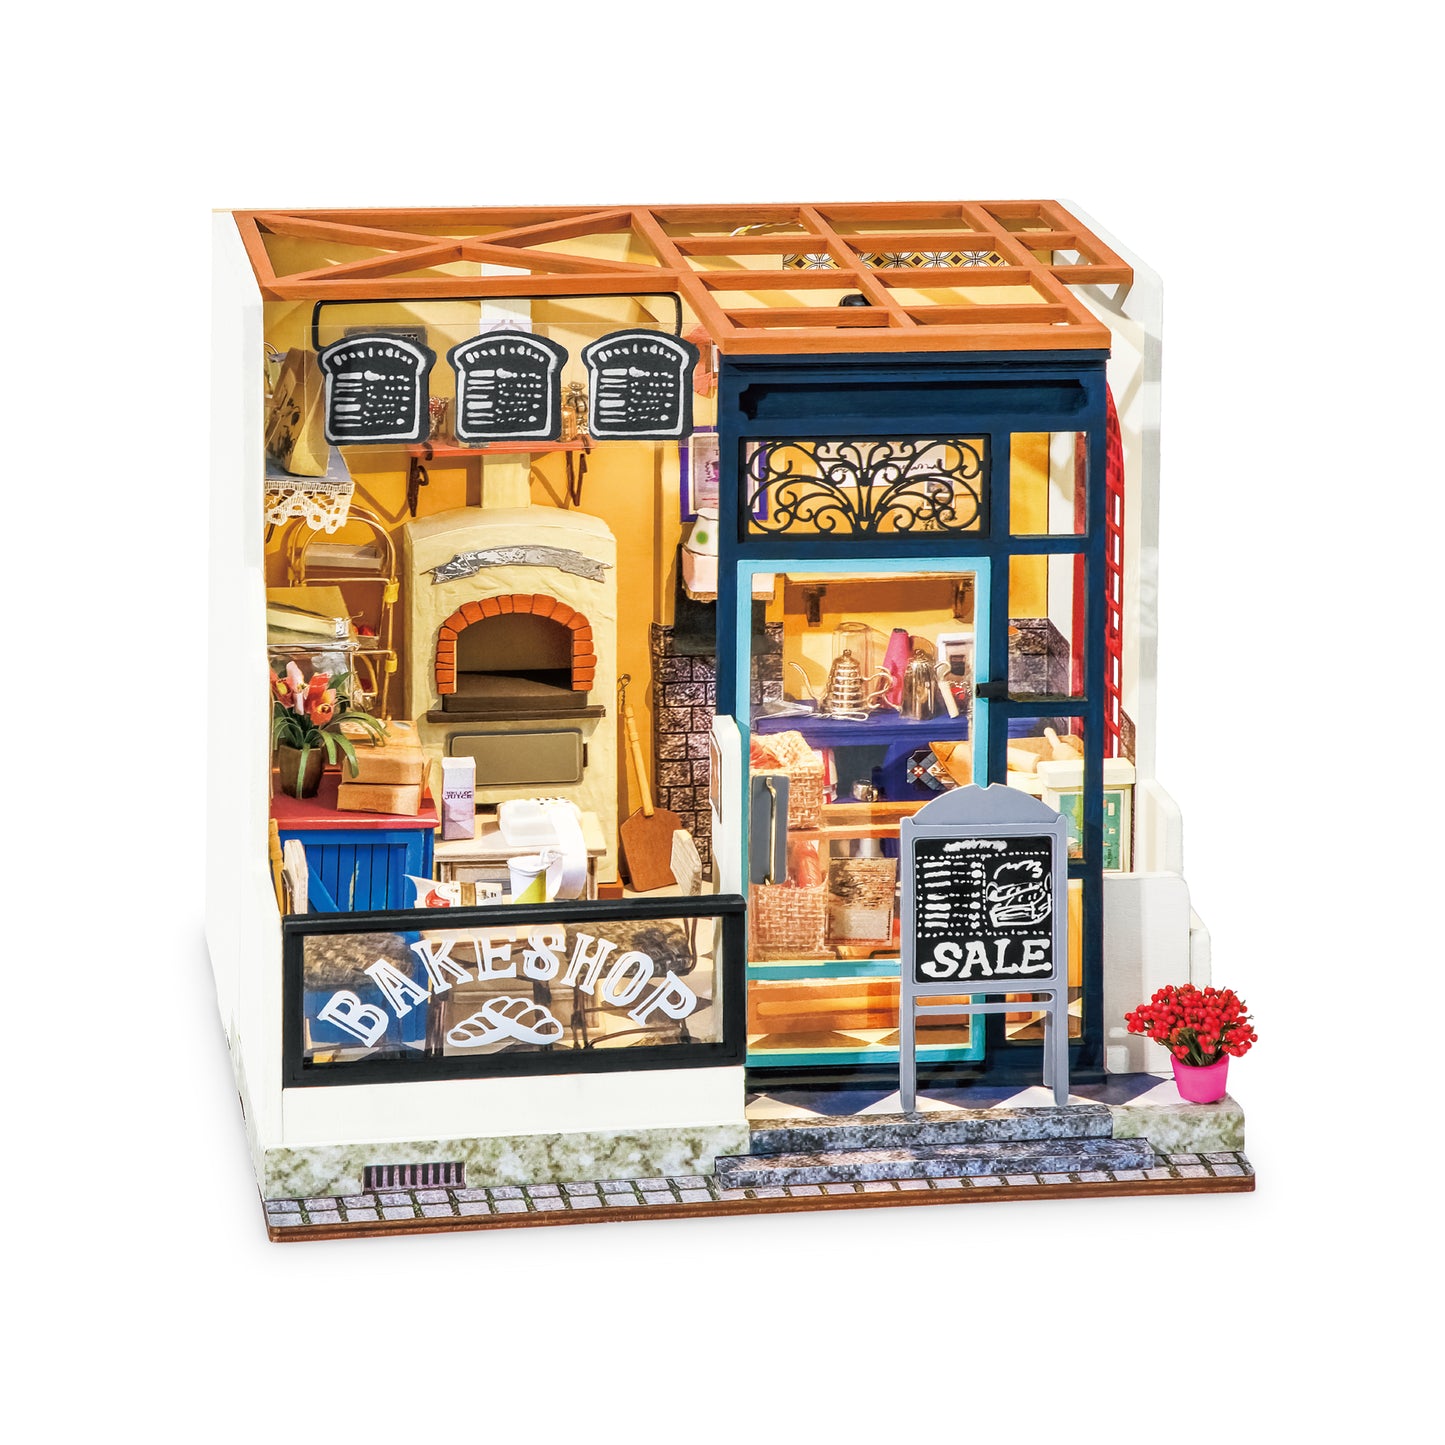 DIY Miniature House Kit: Bake Shop